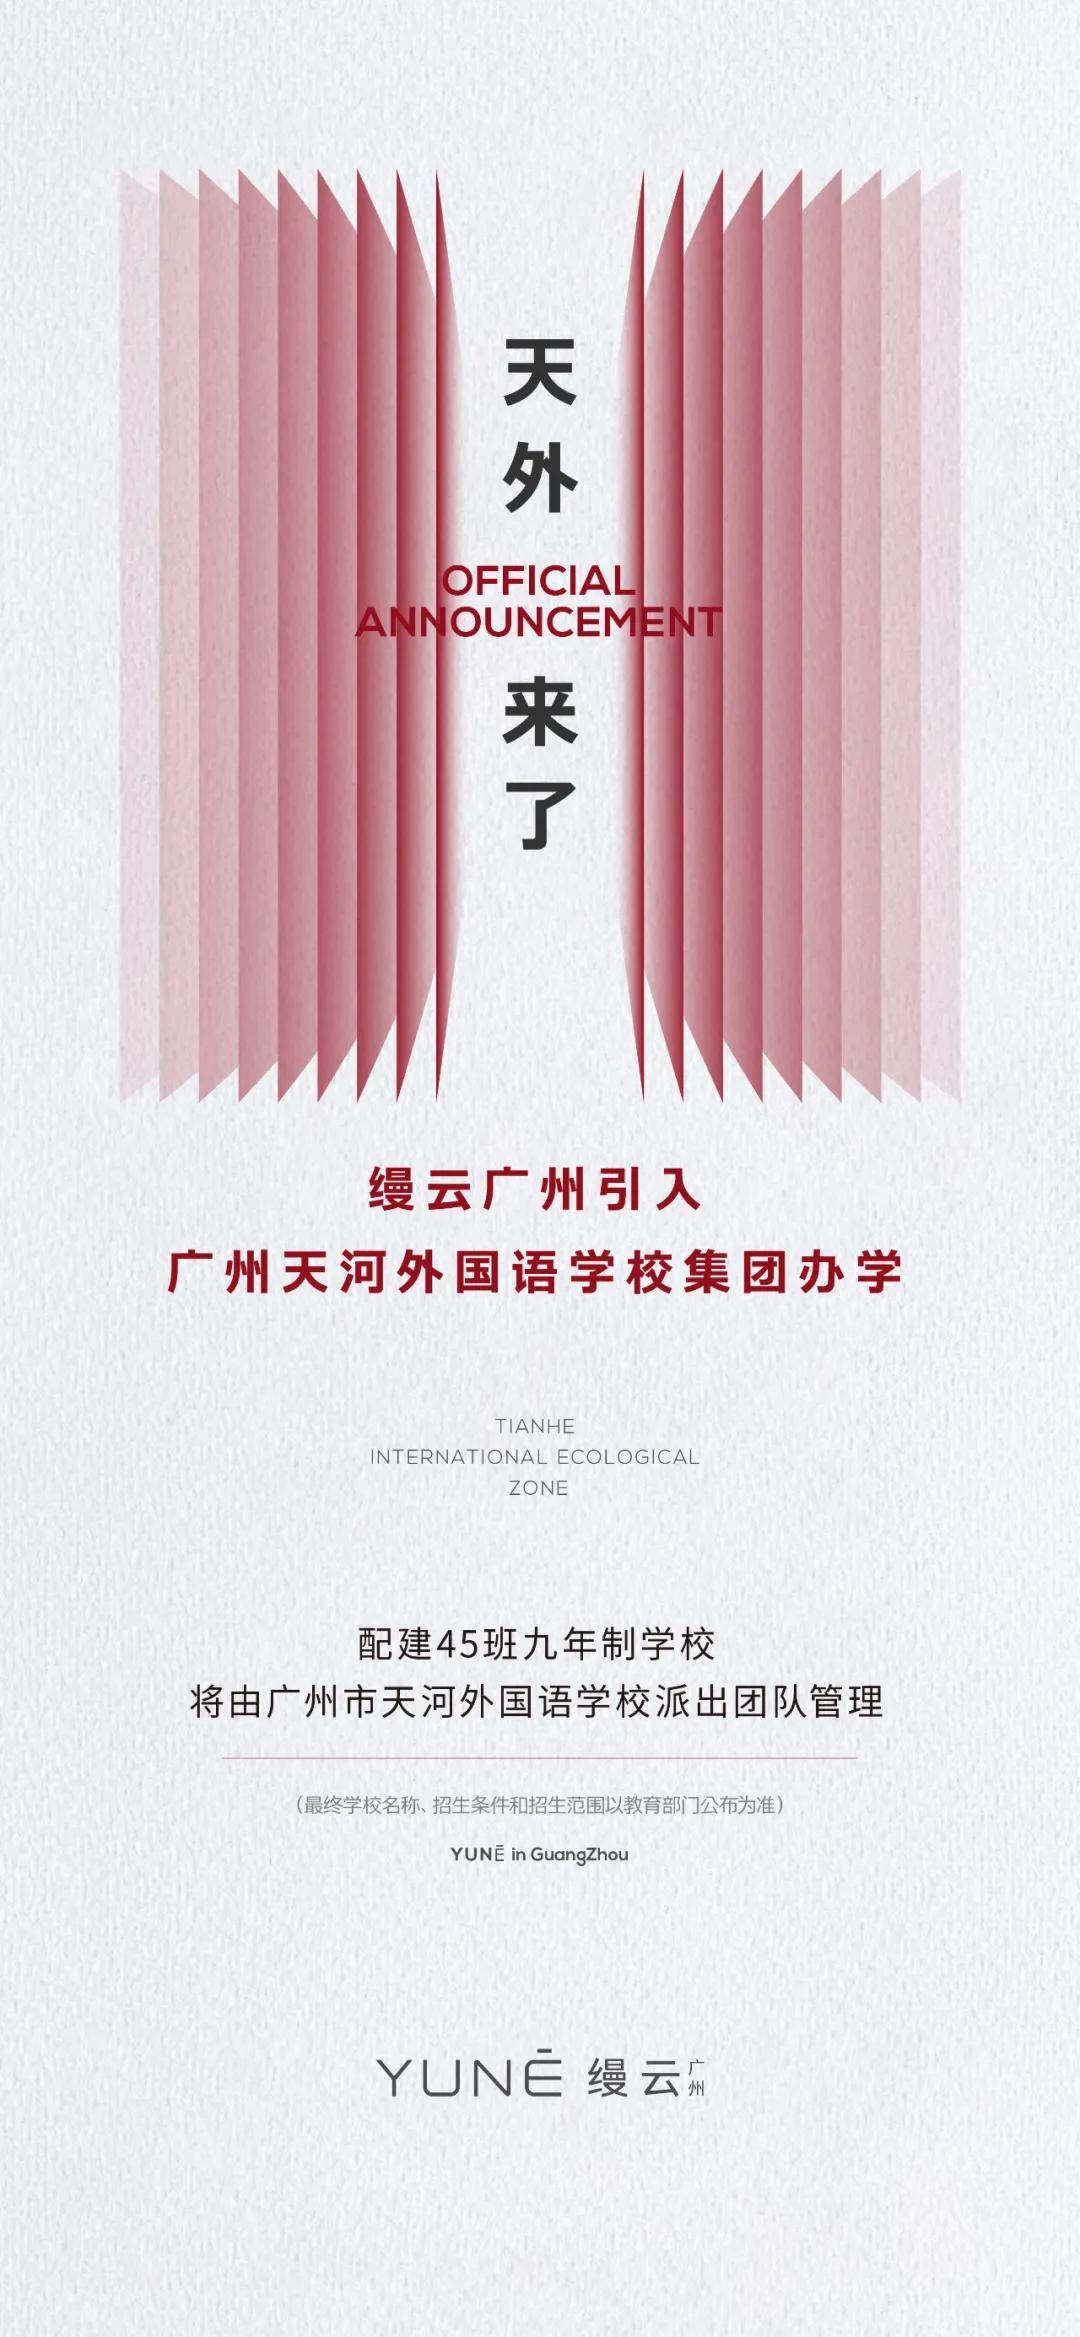 昨天,缦云广州引入广州天河外国语学校教育集团办学正式官宣!